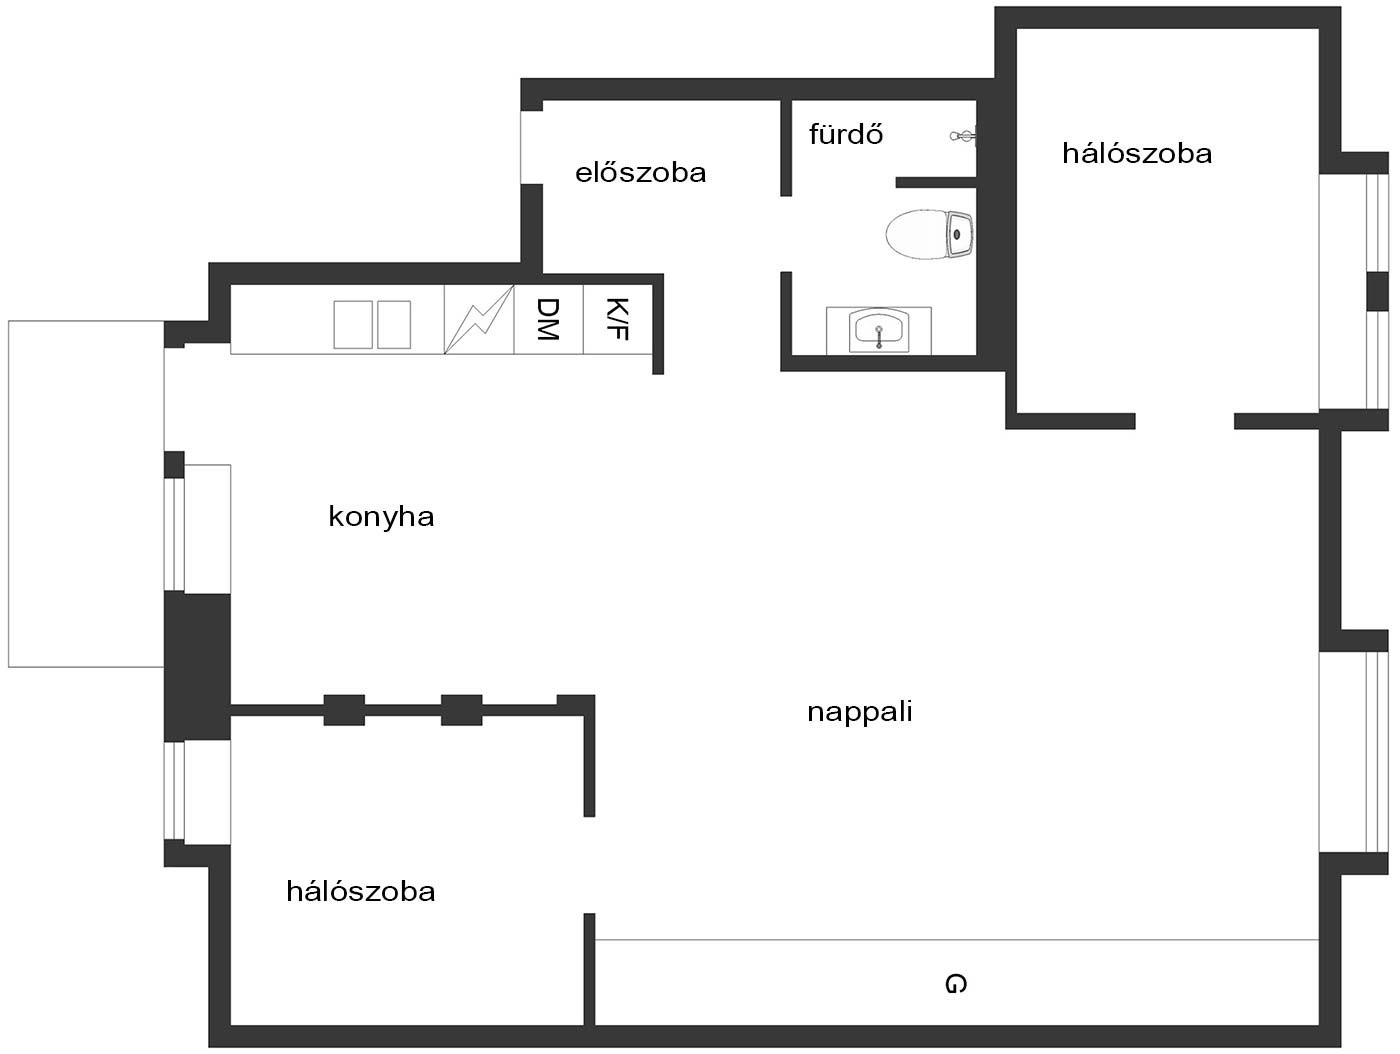 Szuper tetőtéri lakás 75m2-en, látványos tér tágas nappali-konyhával, két hálószobával